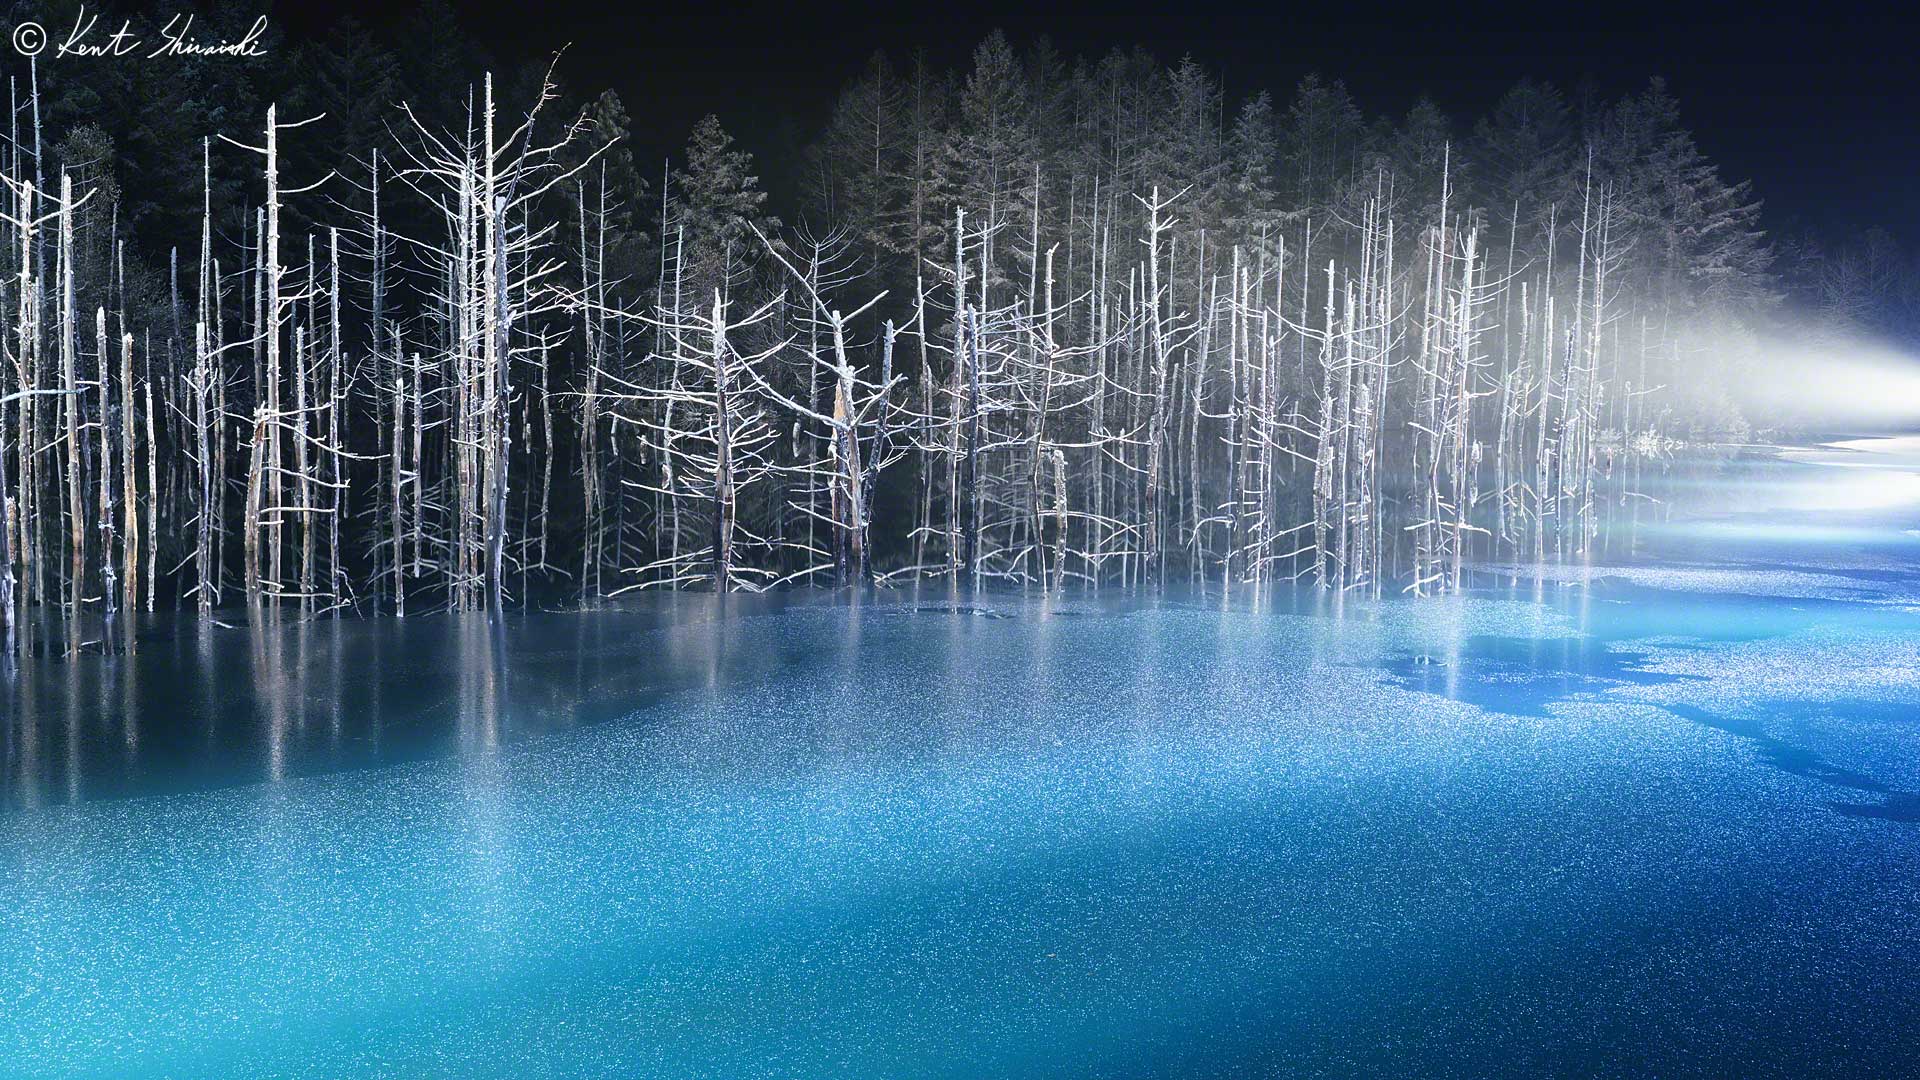 青い池のライトアップ 17年11月1日 18年3月31日まで開催決定 Kent Shiraishi Photo Blog